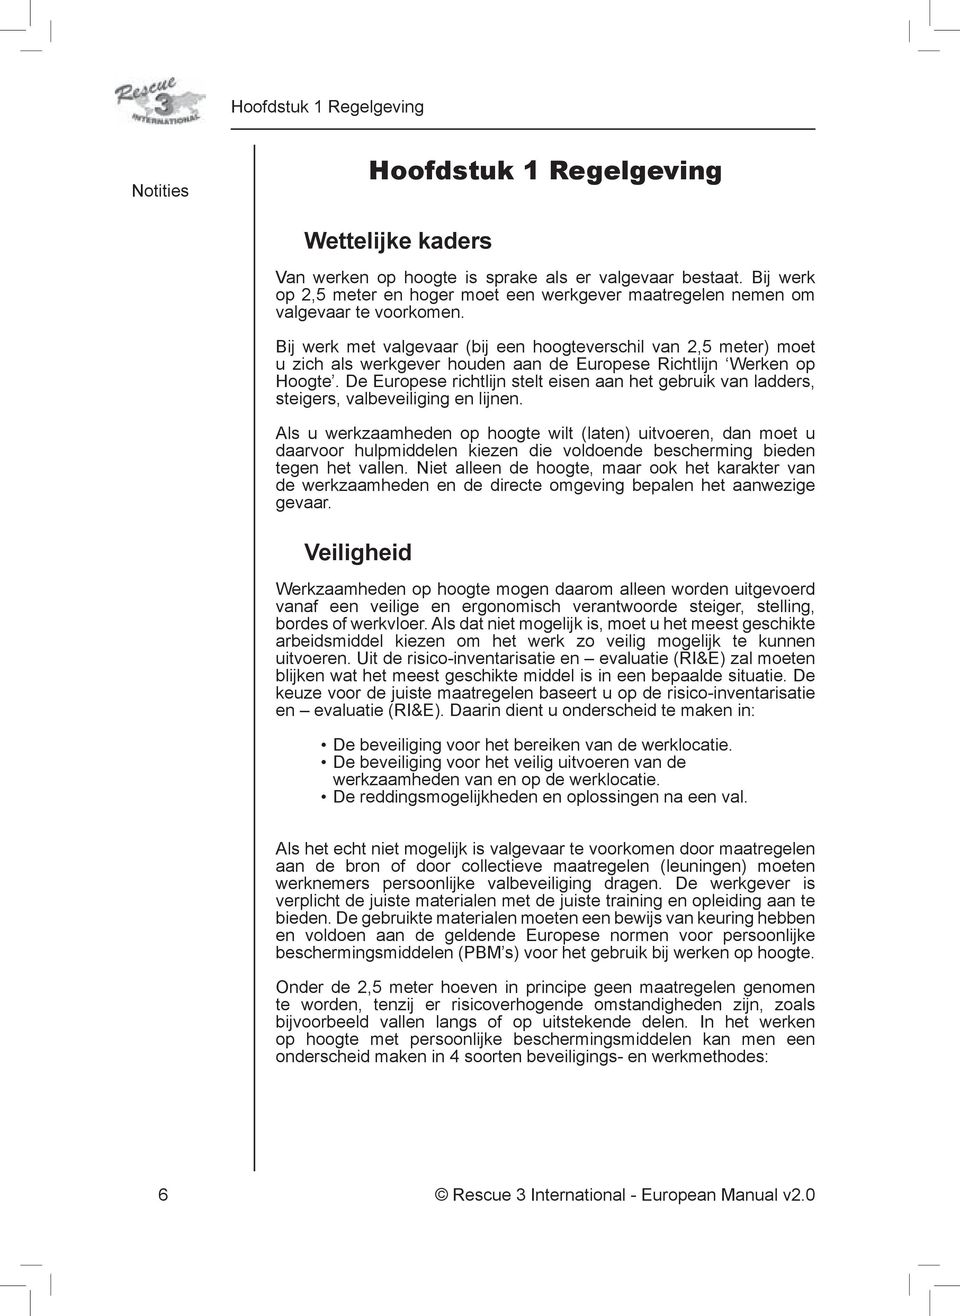 Bij werk met valgevaar (bij een hoogteverschil van 2,5 meter) moet u zich als werkgever houden aan de Europese Richtlijn Werken op Hoogte.